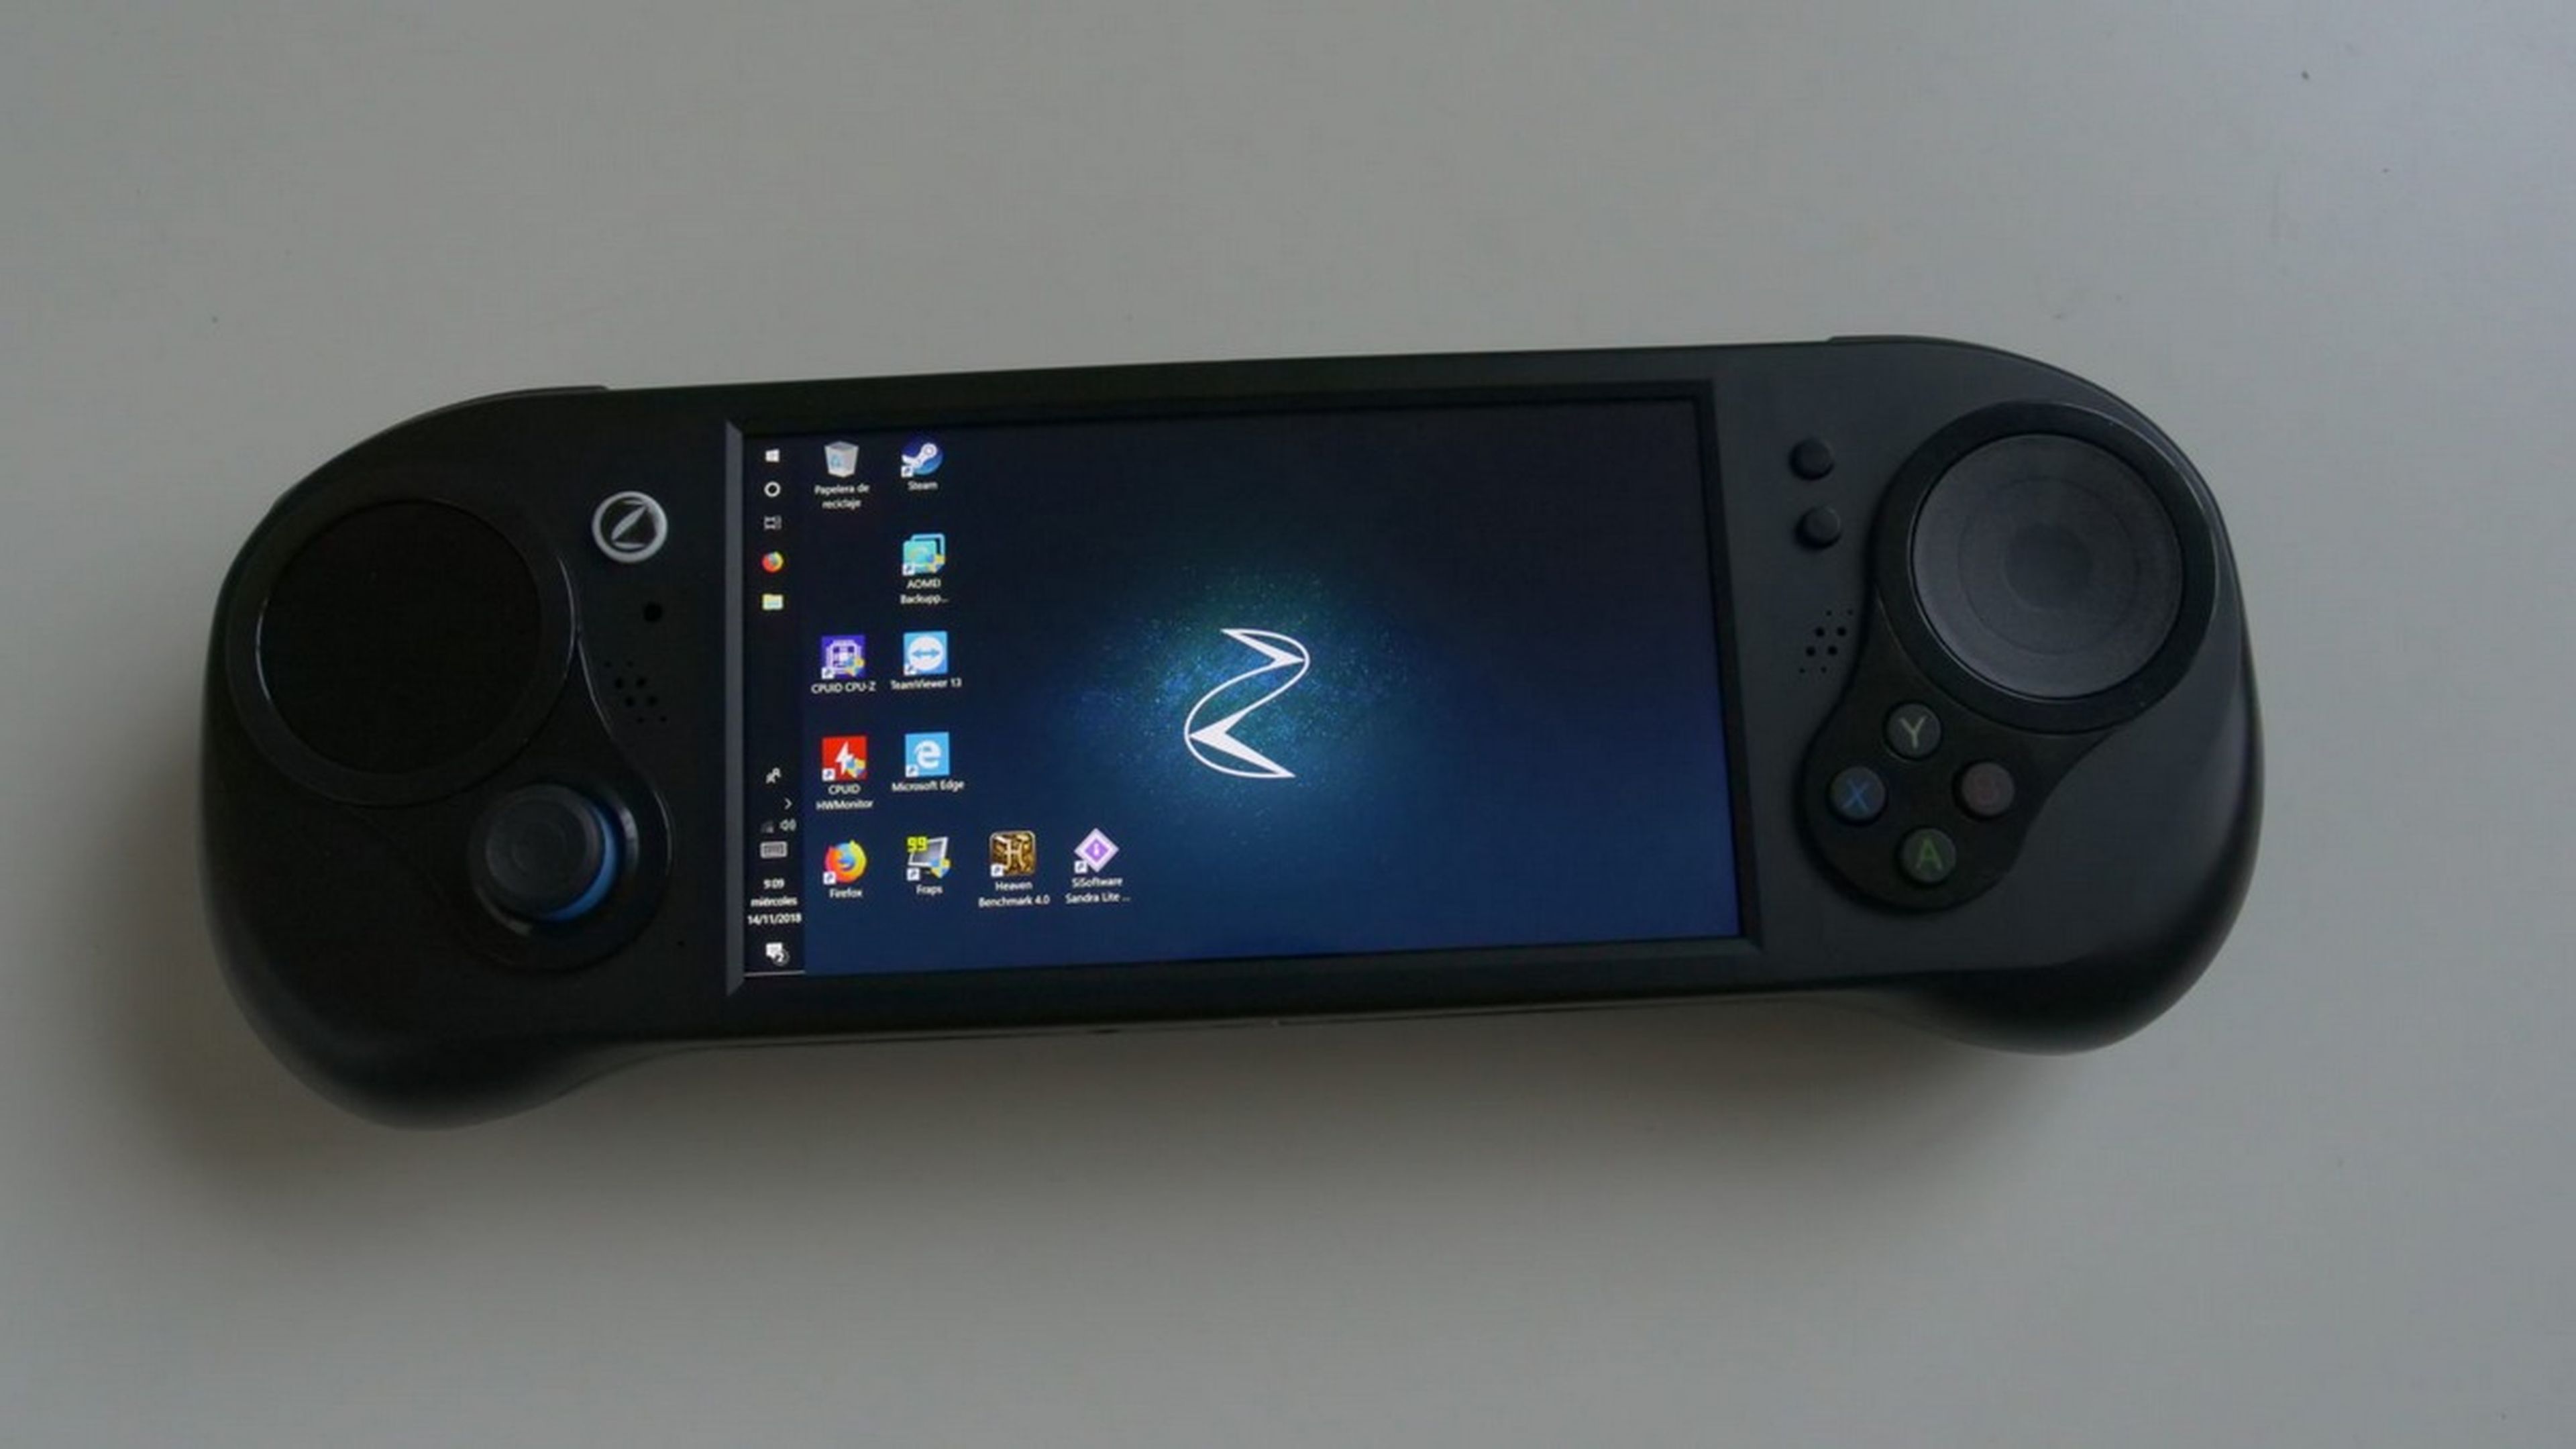 Smach Z, la consola portátil con juegos de PC, se estrena con GTA V a 60 fps